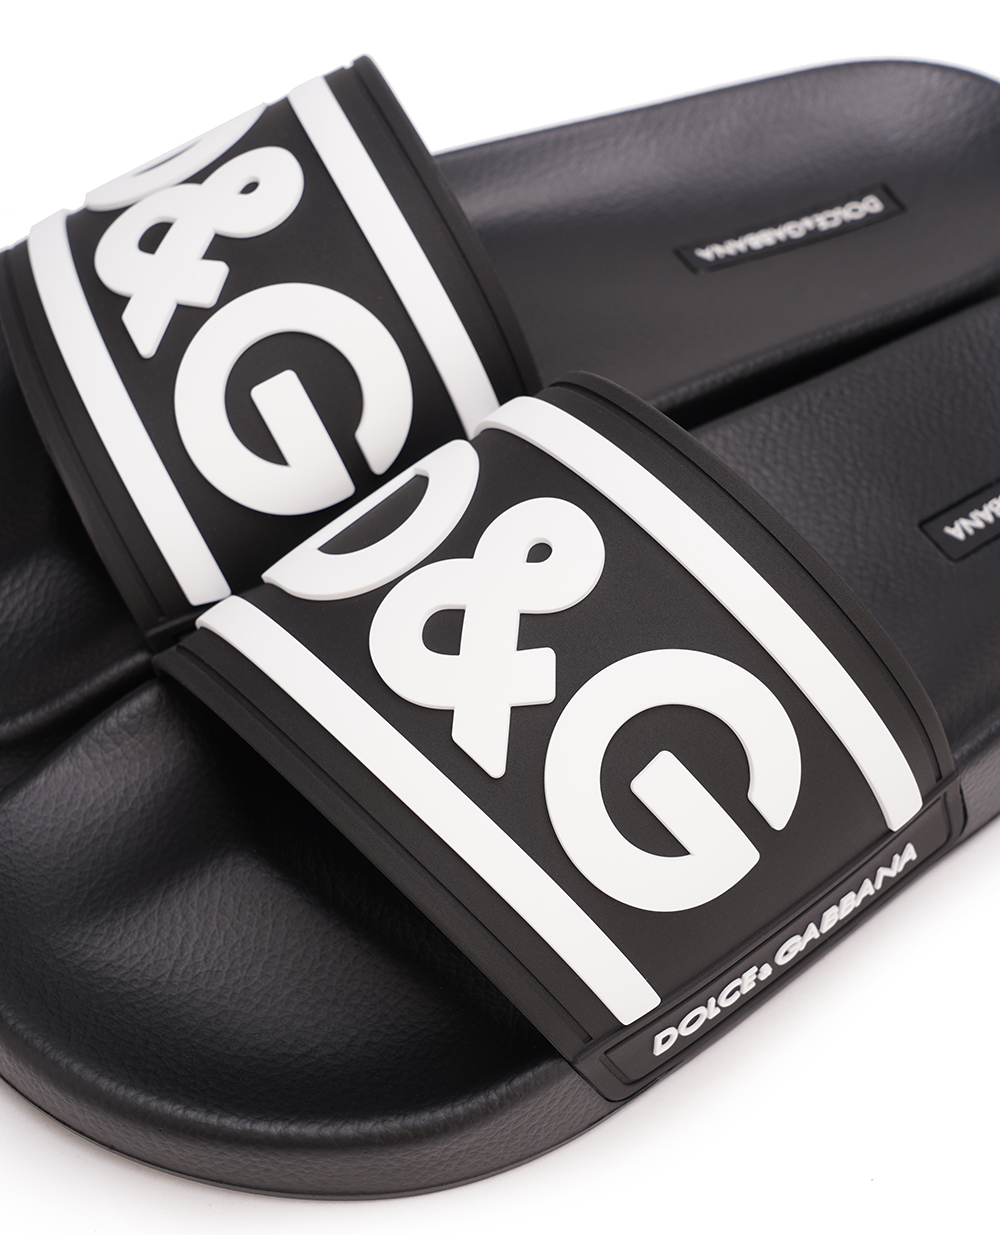 Шлепанцы Dolce&Gabbana CS2072-AQ858, черный цвет • Купить в интернет-магазине Kameron